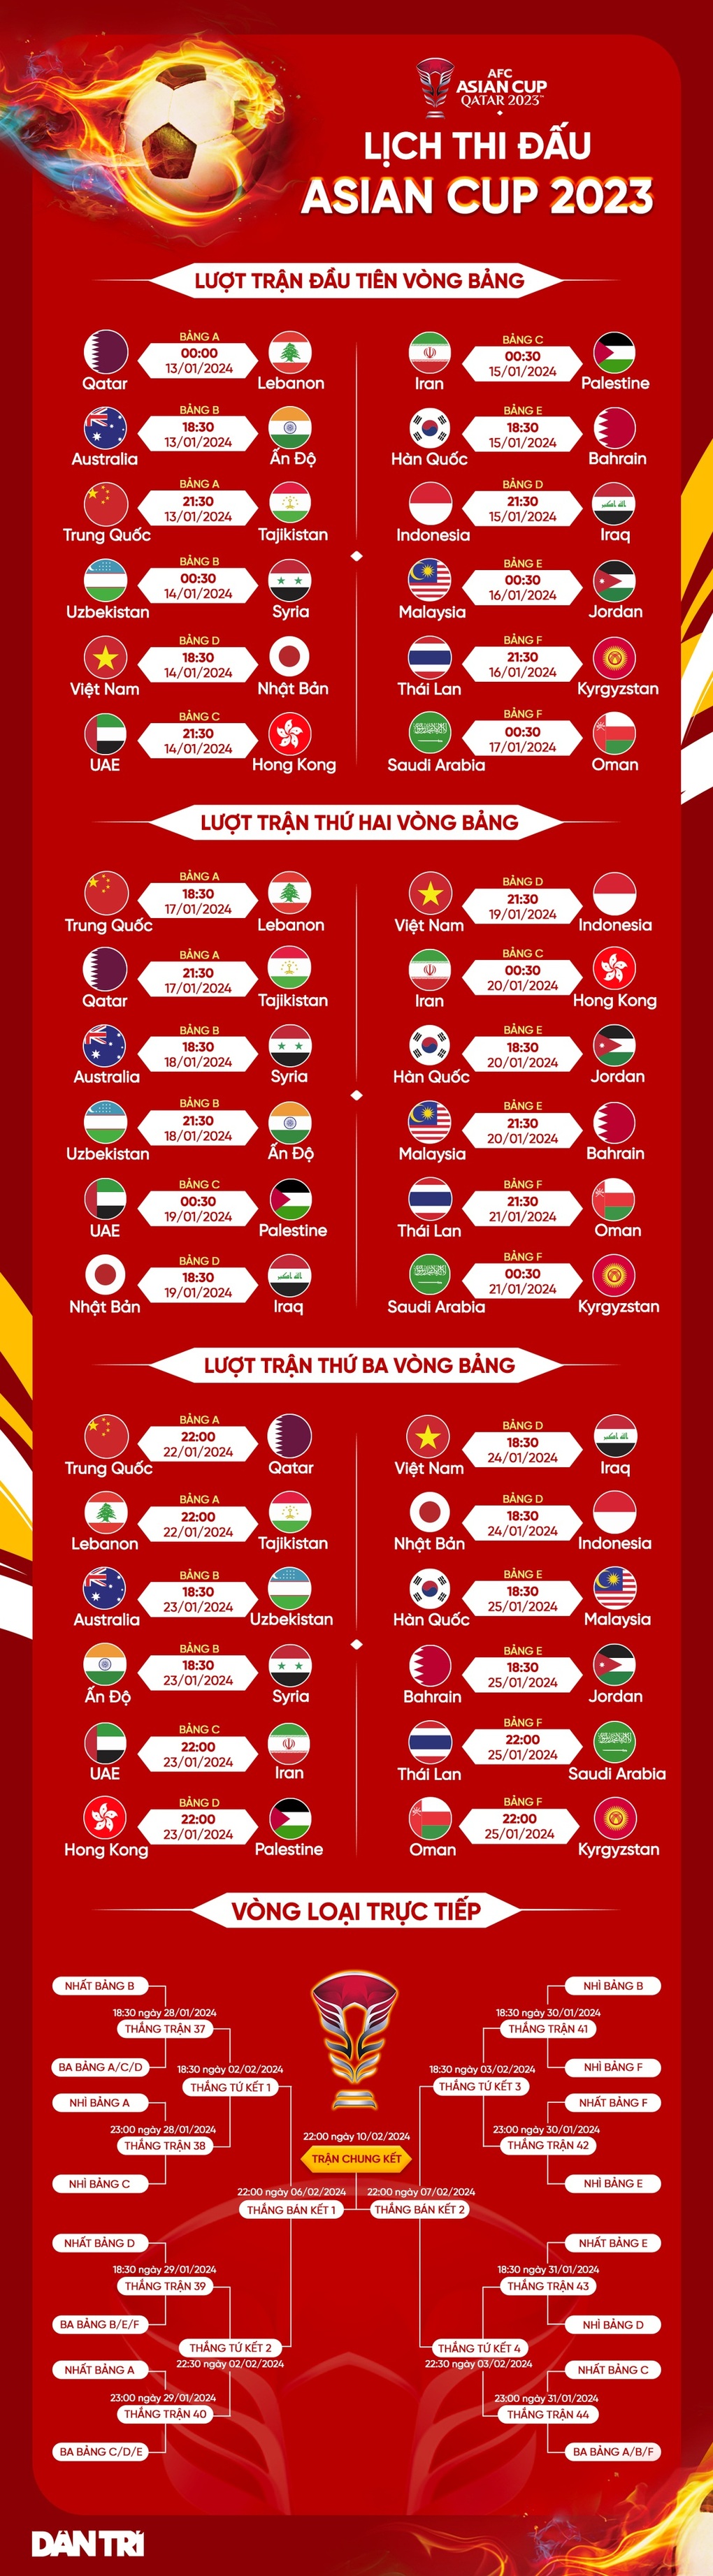 Indonesia có kế hoạch đặc biệt, quyết thắng tuyển Việt Nam ở Asian Cup 2023 - 3